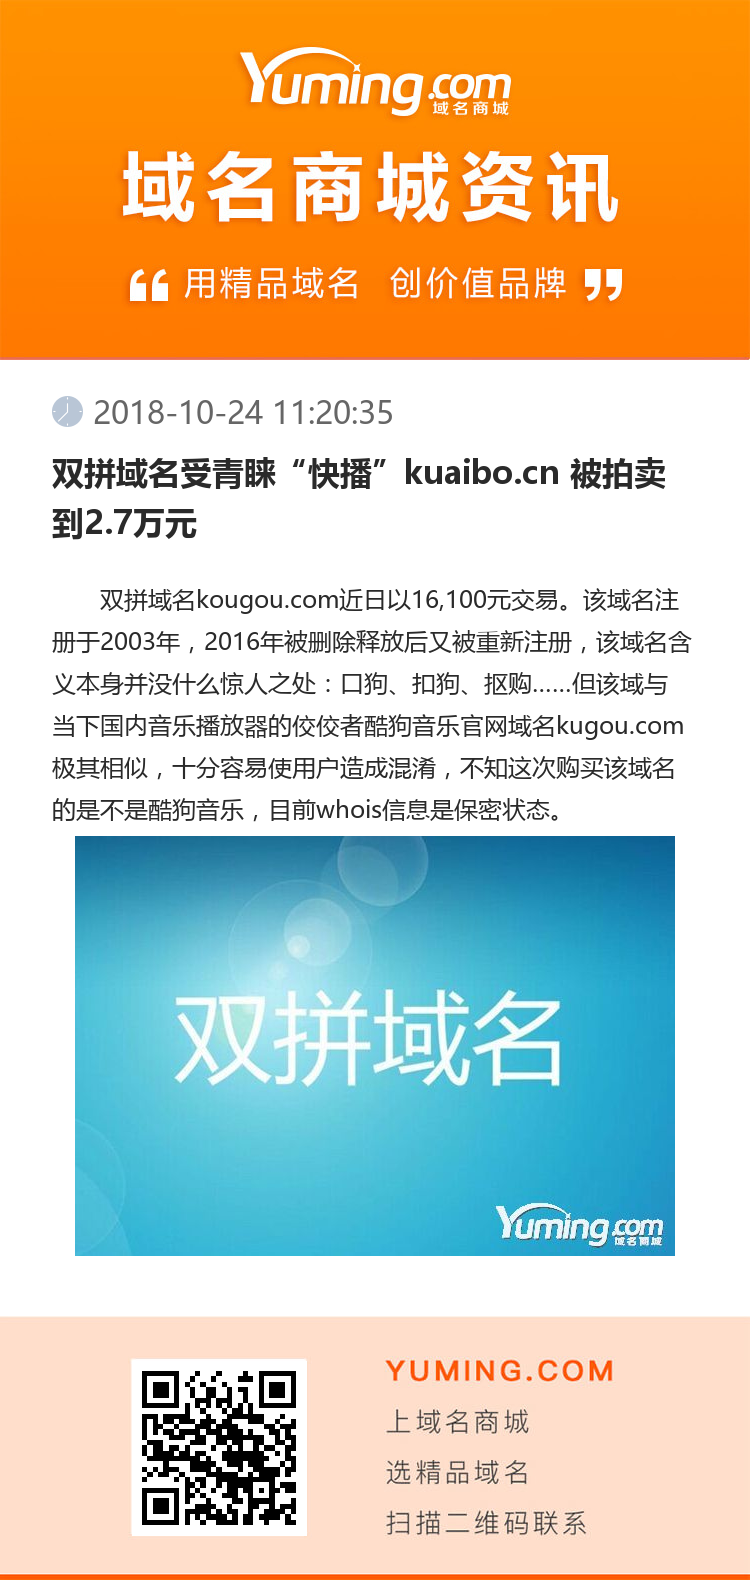 双拼域名受青睐“快播”kuaibo.cn 被拍卖到2.7万元